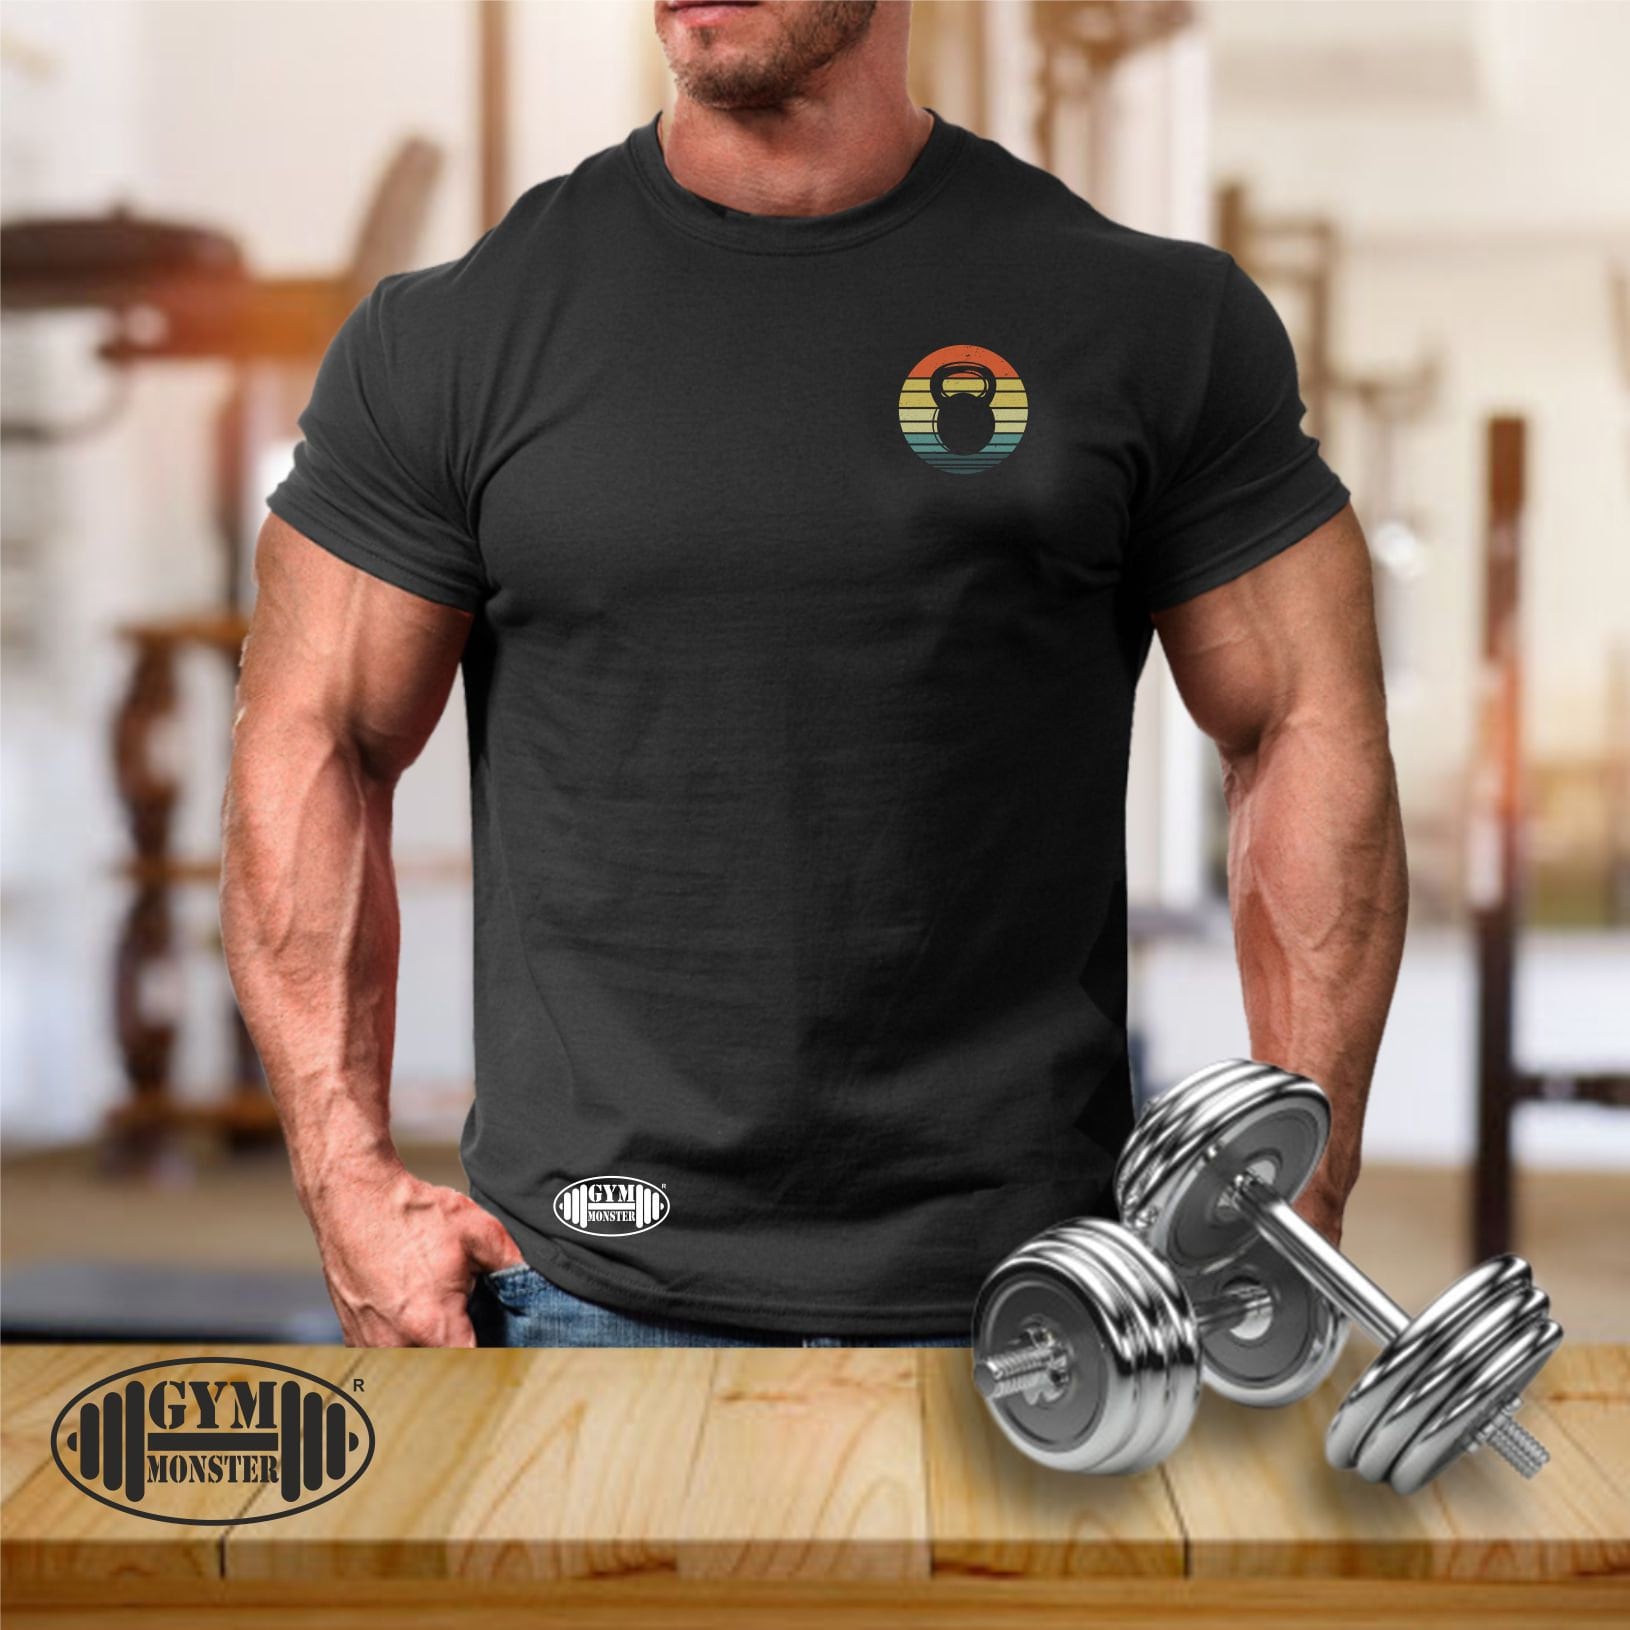 Kettlebell T Shirt Pocket Gym Kleidung Bodybuilding Gewicht Training Übung Gewichtheben Boxen Mma Army Monster Herren T-Shirt von TheGymMonsterTGM